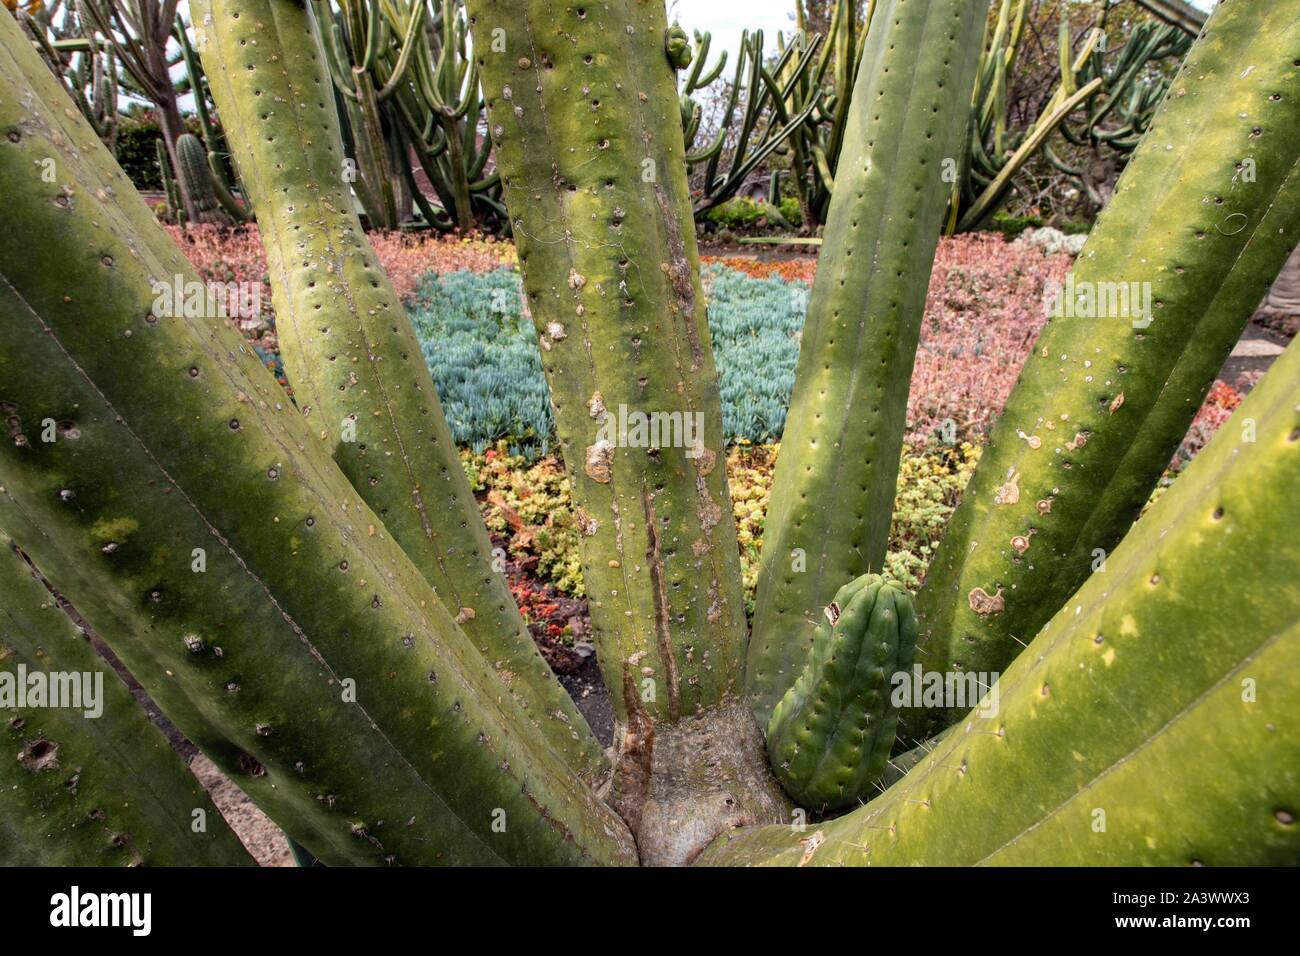 Détail d'un cactus sans épines et parterre en arrière-plan, le Jardin botanique de Madère, Funchal, île de Madère, Portugal Banque D'Images